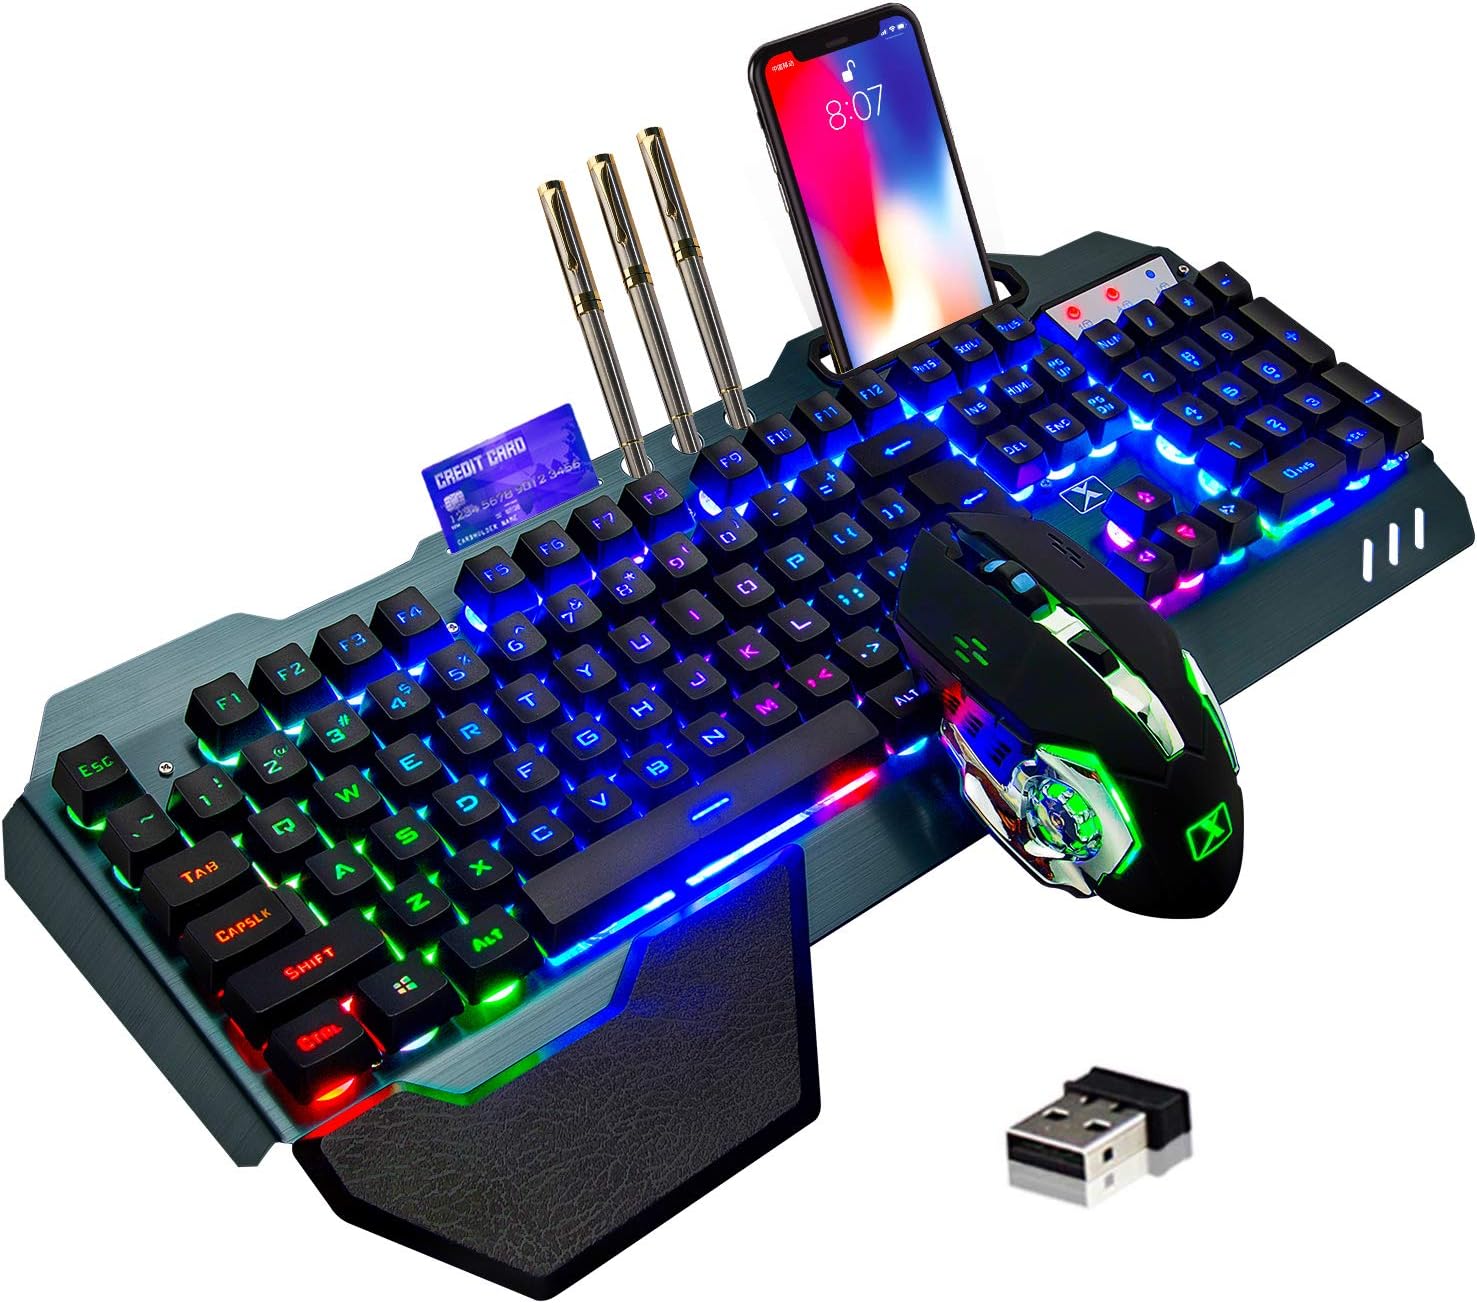  Combo de teclado y mouse inalámbricos para juegos con